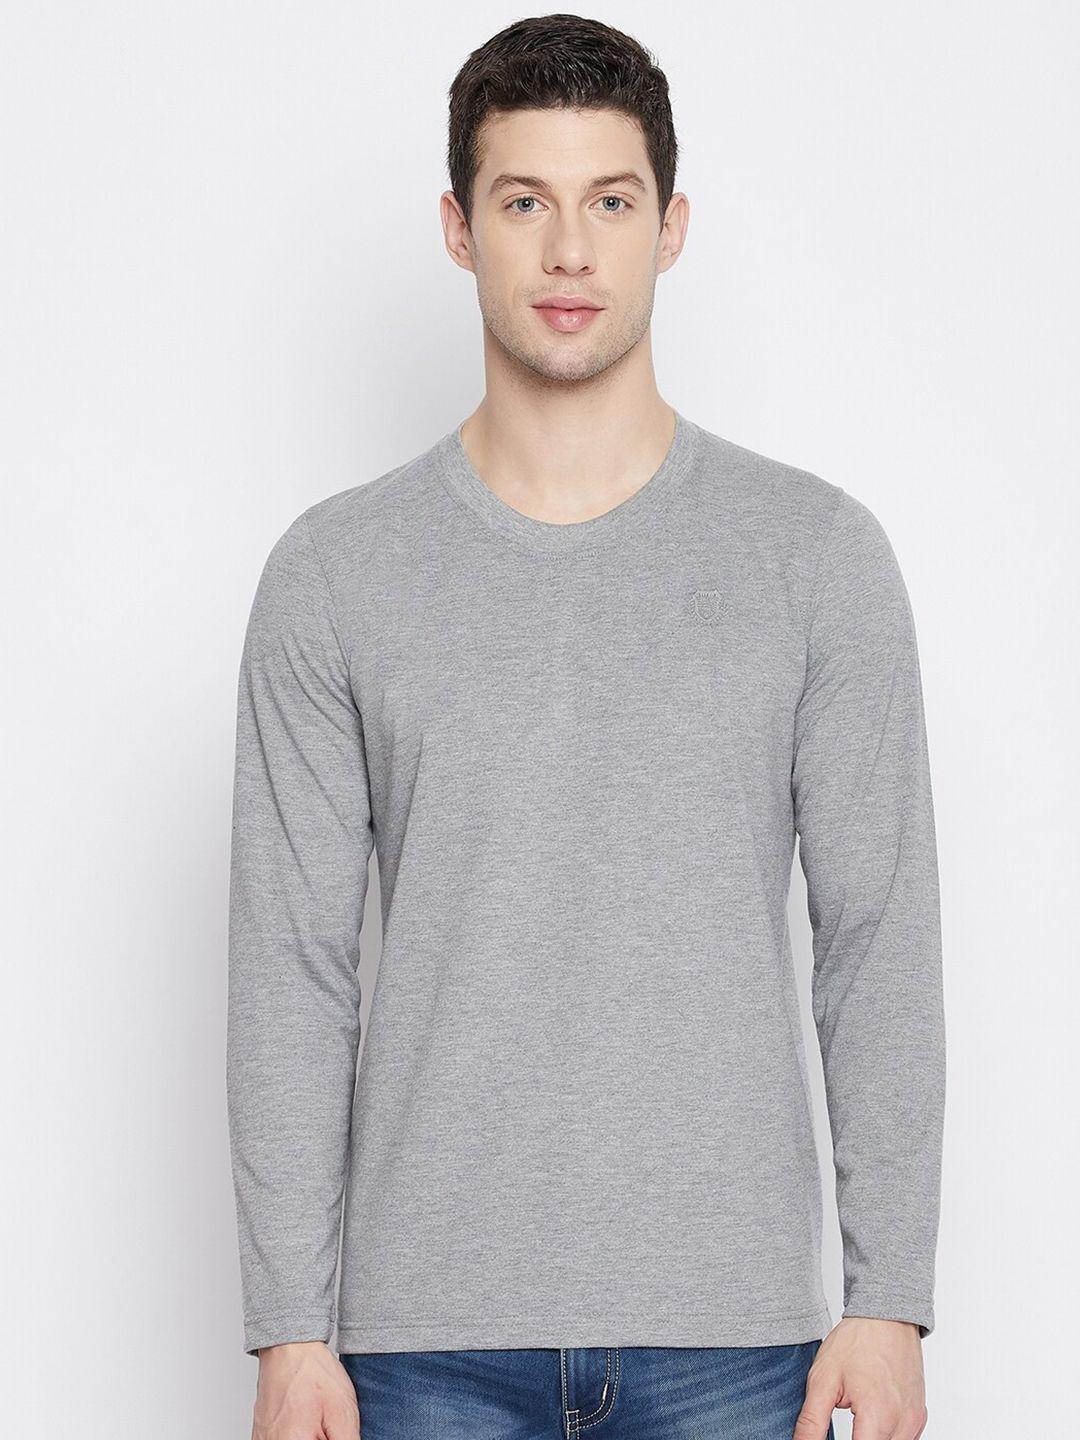 adobe-men-grey-melange-t-shirt